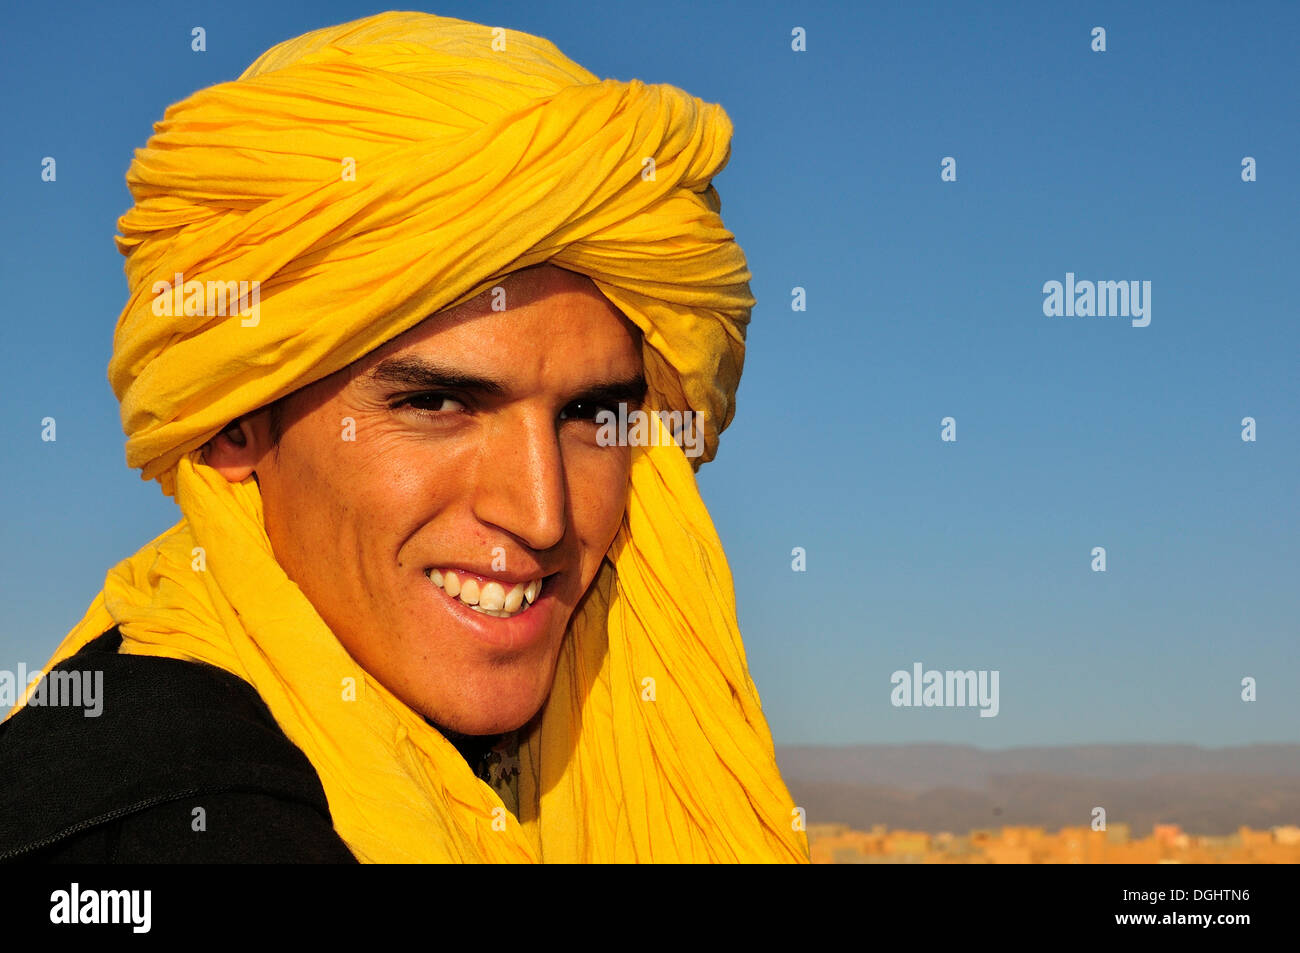 Giovane uomo che indossa un giallo shesh marocchino o Touareg turbante, ritratto, Marocco, Africa Foto Stock